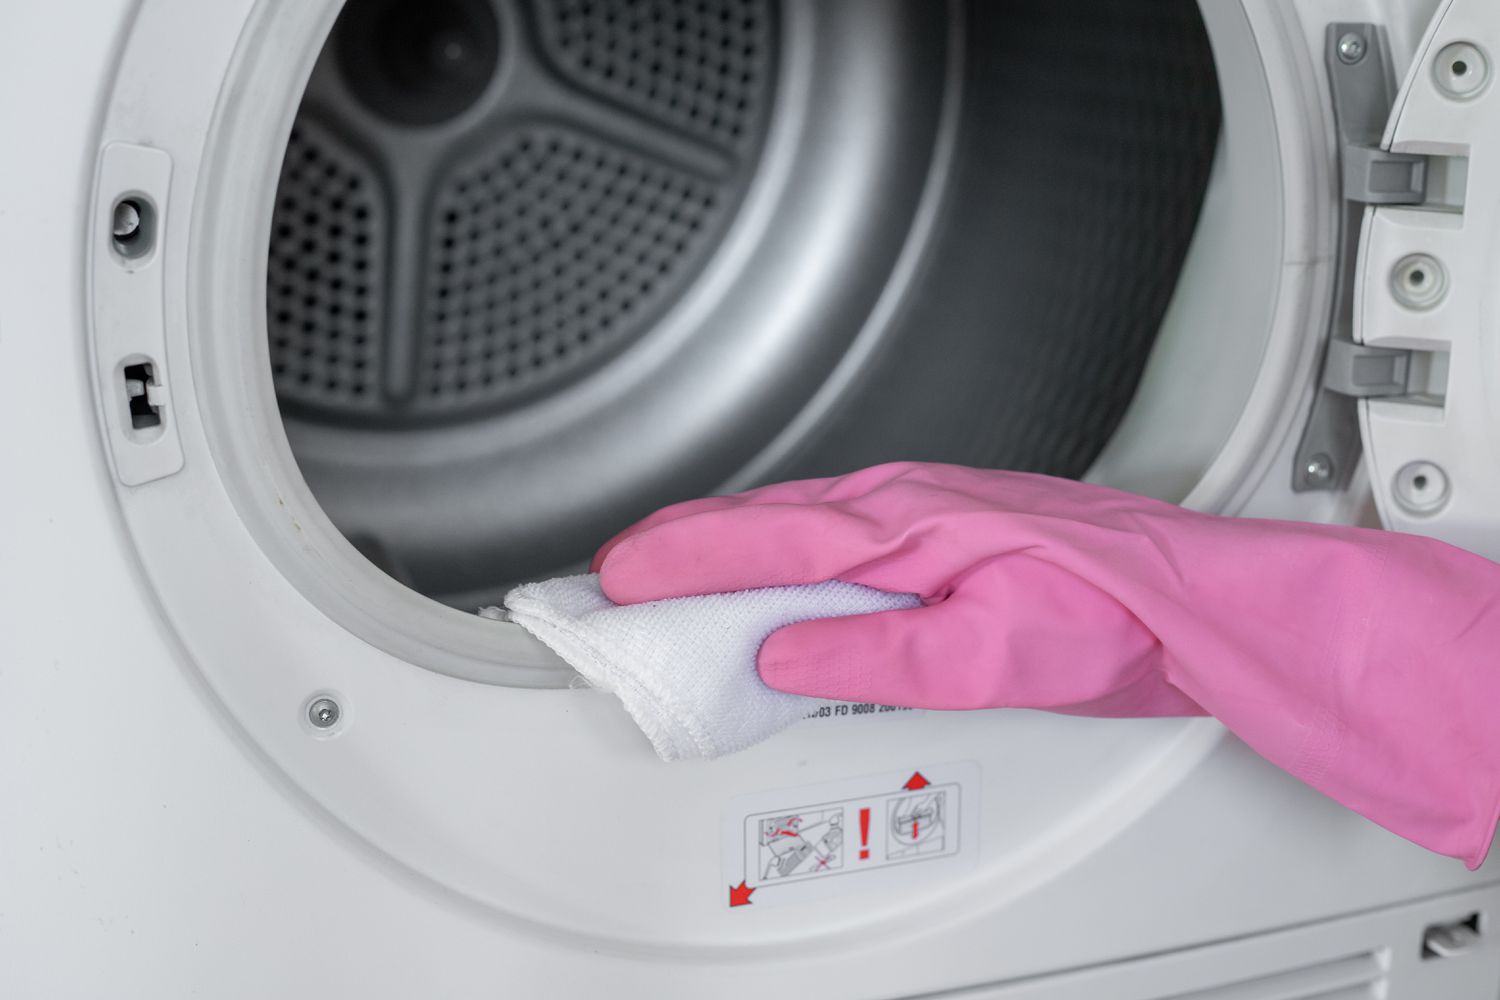 Färbemaschinentrommel mit einem in Chlorlösung angefeuchteten Tuch und rosa Handschuhen abgewischt